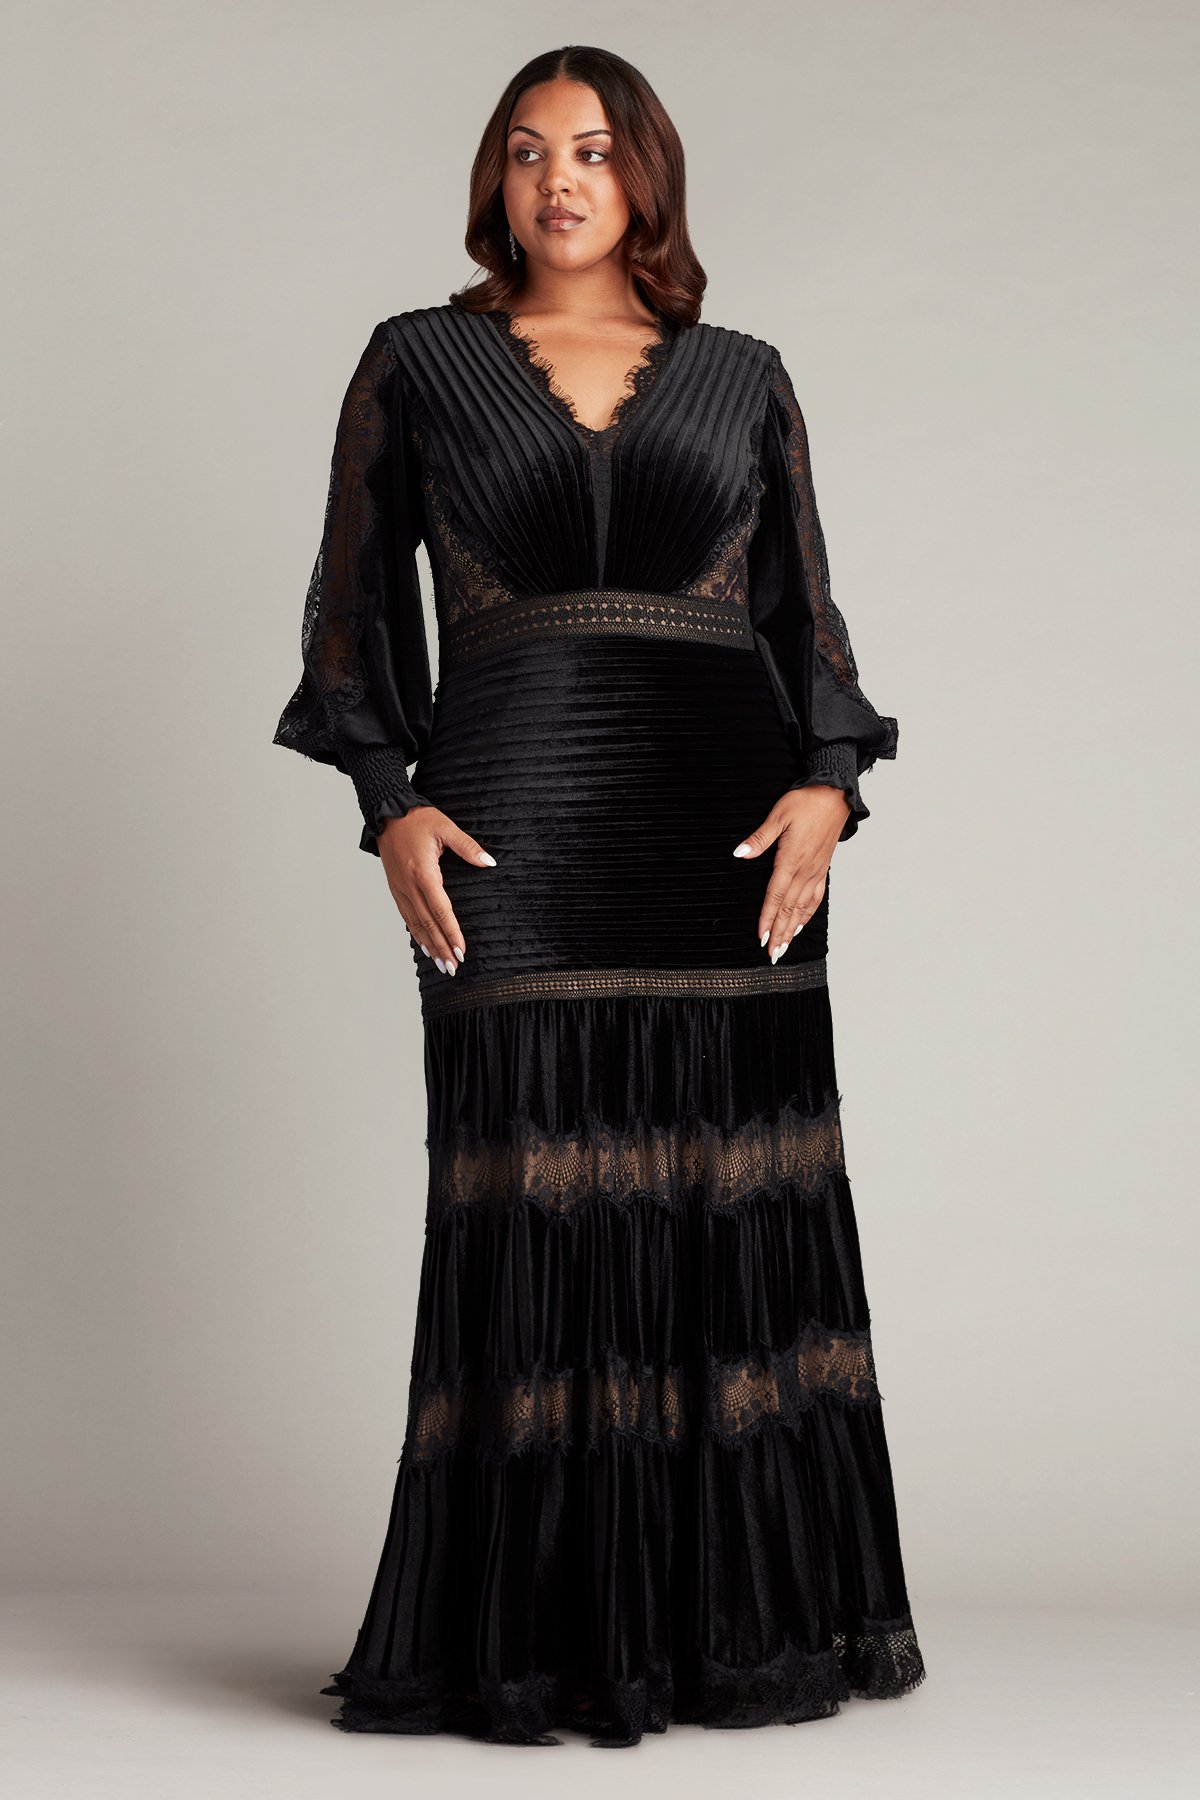 Elegant Square Neck Velvet Dress with Long Sleeves For Formal Events -  $128.992 #V78171 - SheProm.com